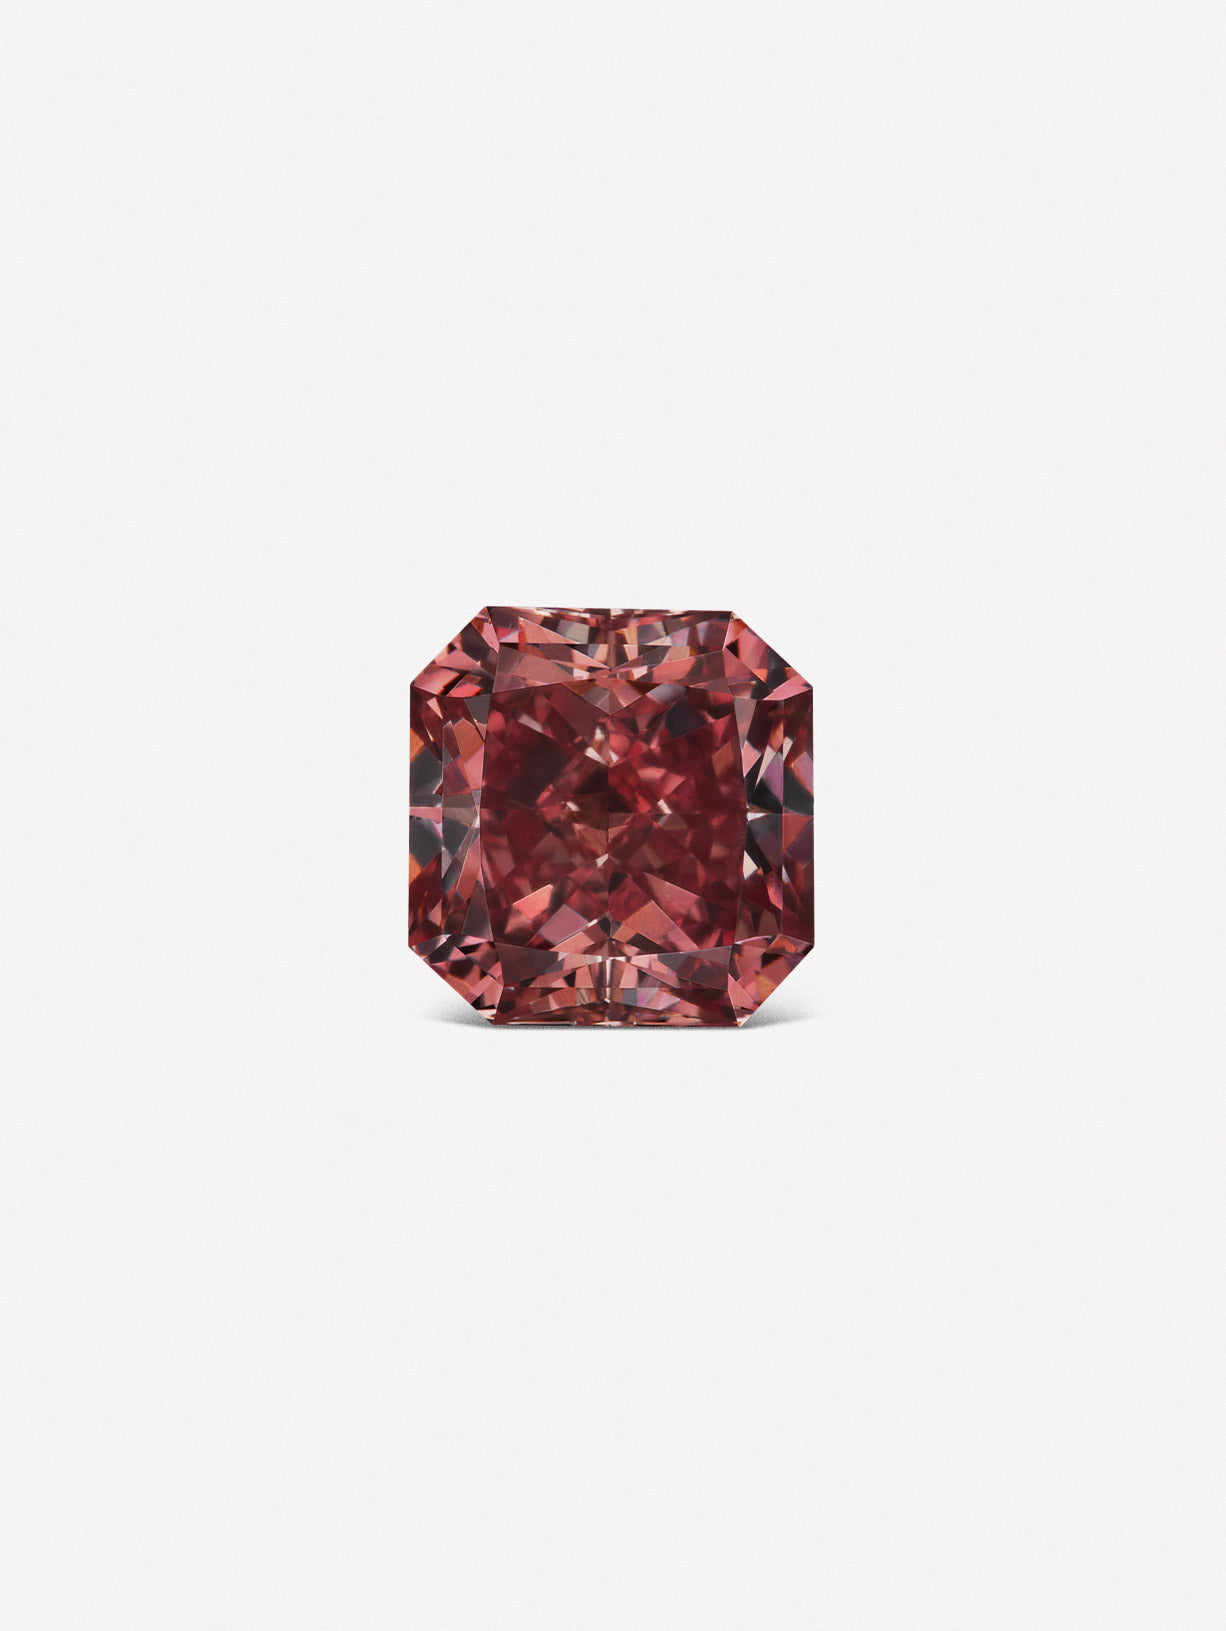 Radiant Argyle Pink™ Diamond - Pink Diamonds, J FINE - J Fine, Pink Diamond - Pink Diamond Jewelry, round-brilliant-argyle-pink™-diamond - Argyle Pink Diamonds